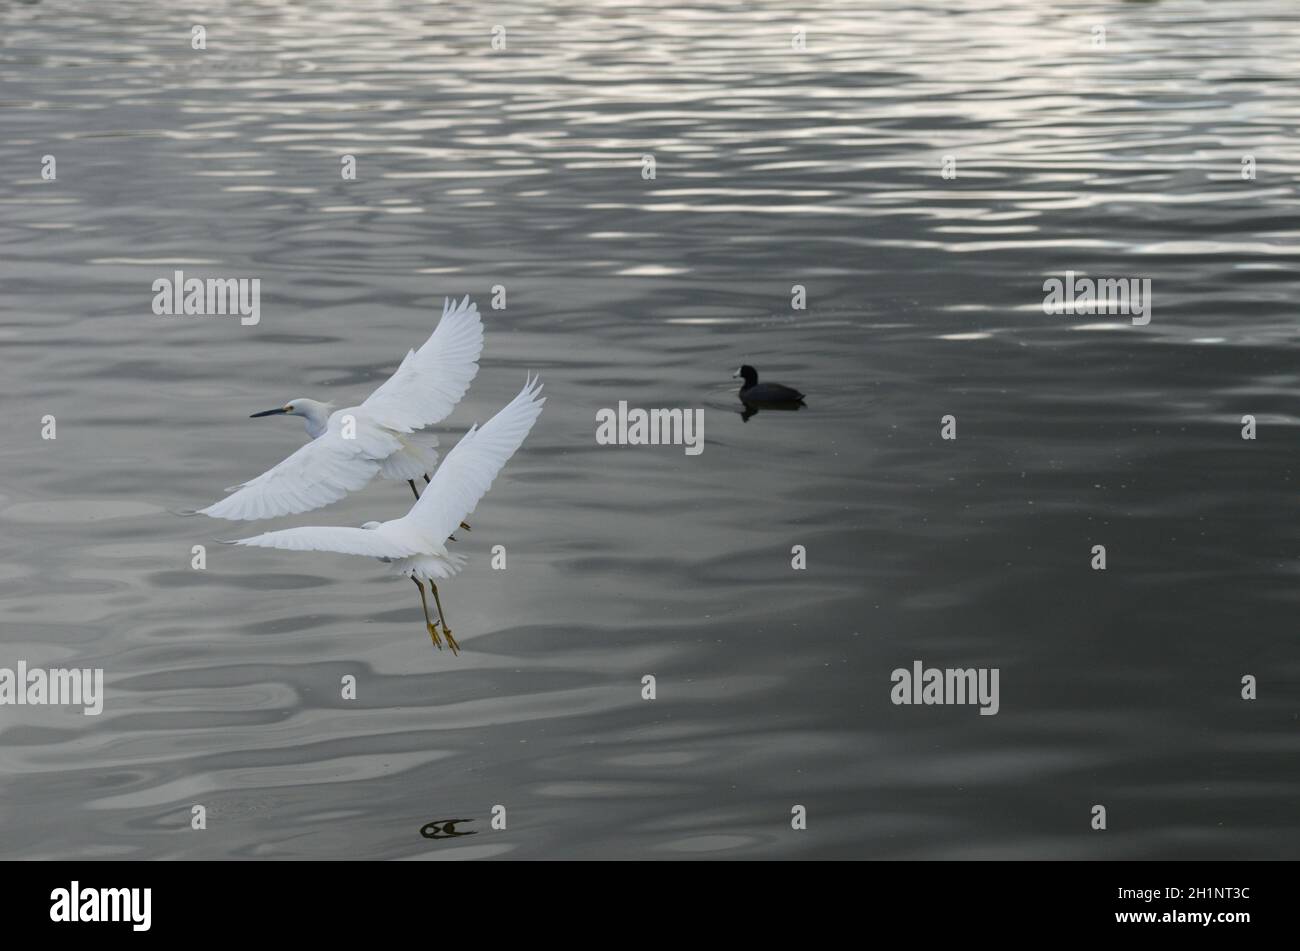 Grazia & bellezza come 2 egreti sono volo, comunicante vicinanza, compassione di queste bellezze esotiche di fauna selvatica di uccelli, espressivo & ispiratore. Foto Stock